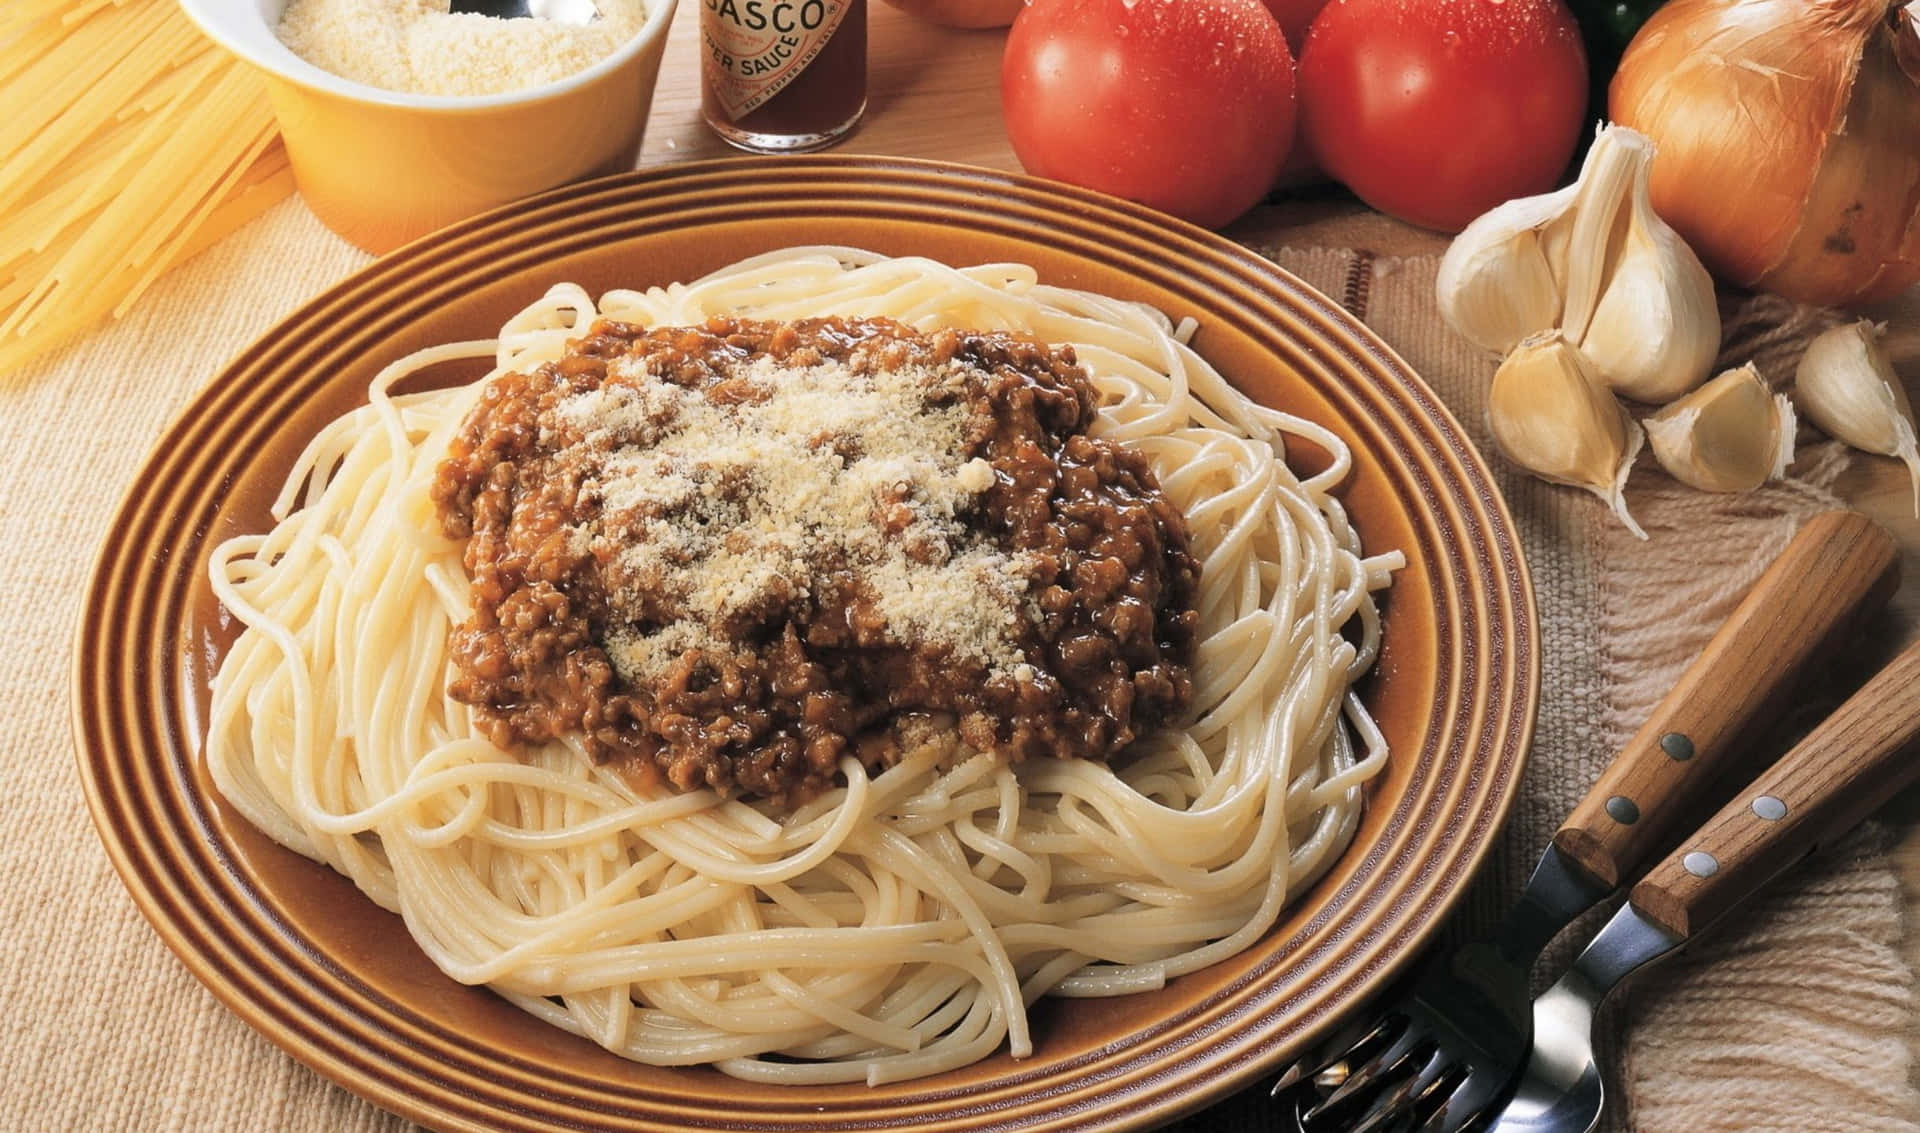 Unpiatto Di Spaghetti Al Sugo Di Carne E Verdure